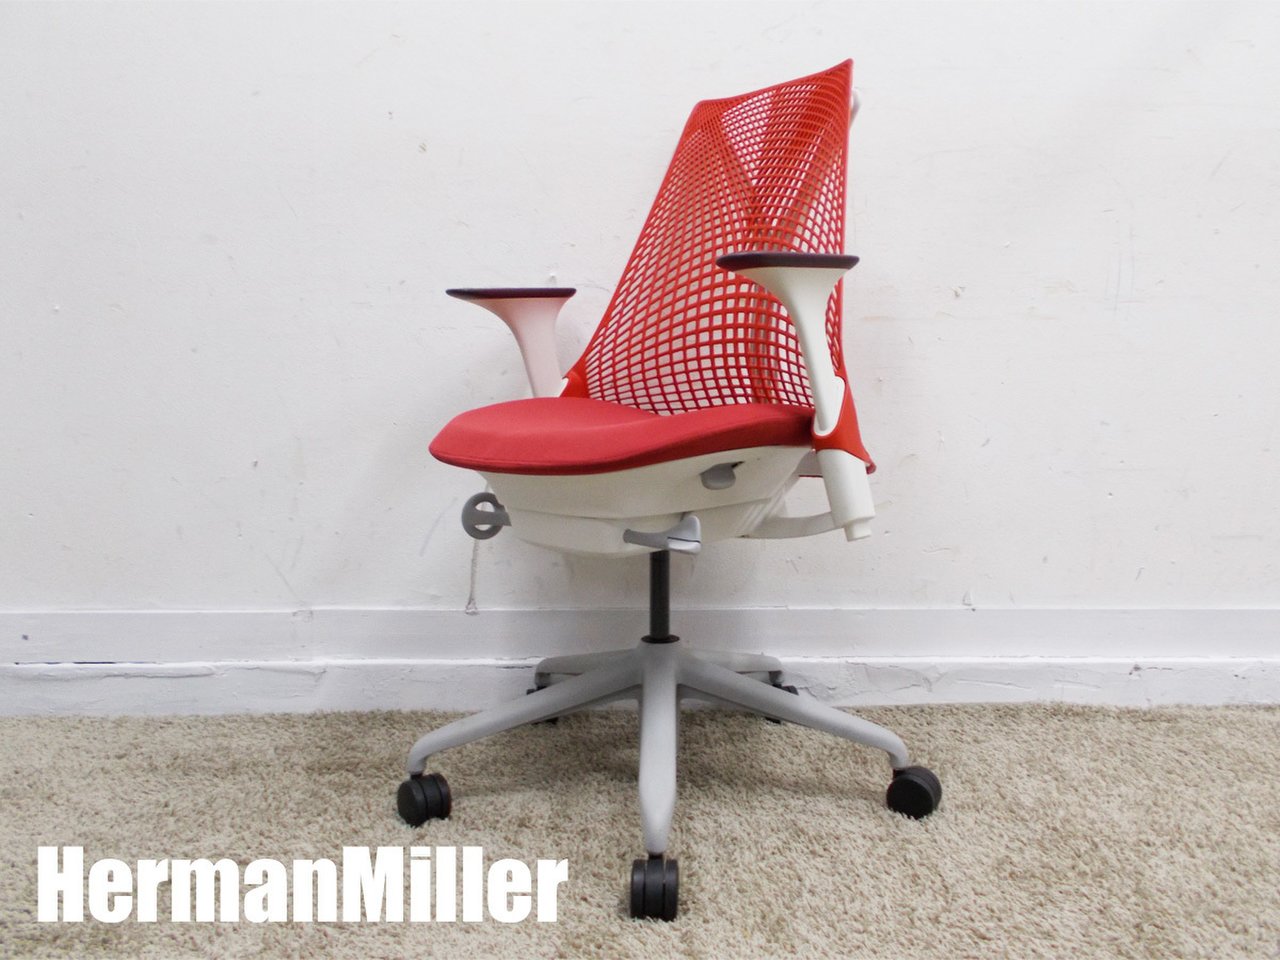 中古】セイルチェア Herman Miller/ハーマンミラー チェアその他 272190 中古オフィス家具ならオフィスバスターズ